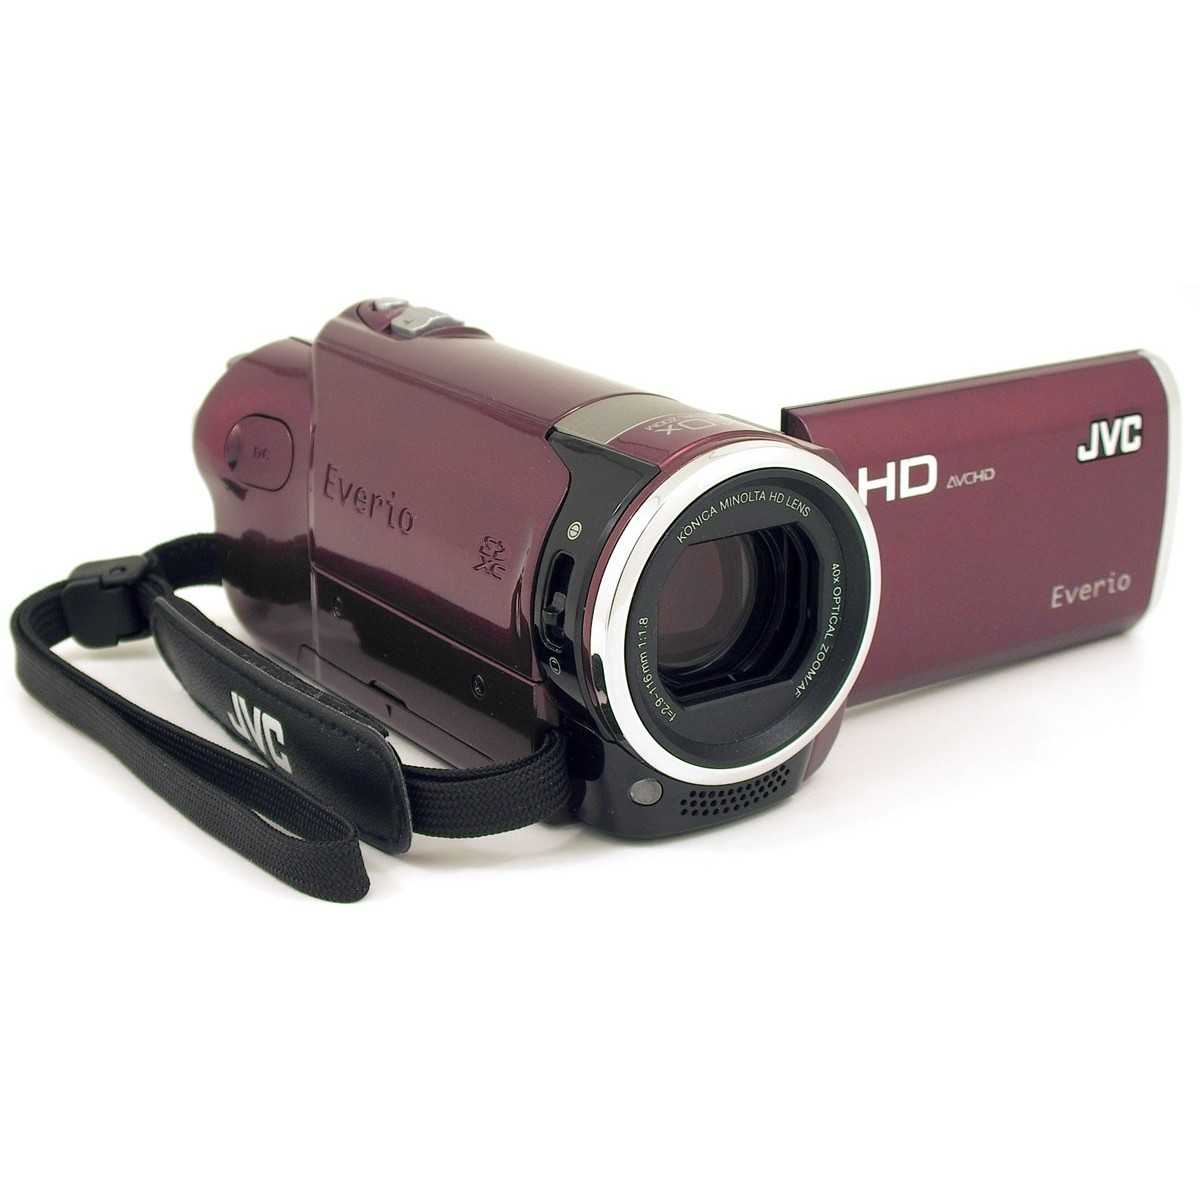 Jvc everio gz-hm960 - купить , скидки, цена, отзывы, обзор, характеристики - видеокамеры